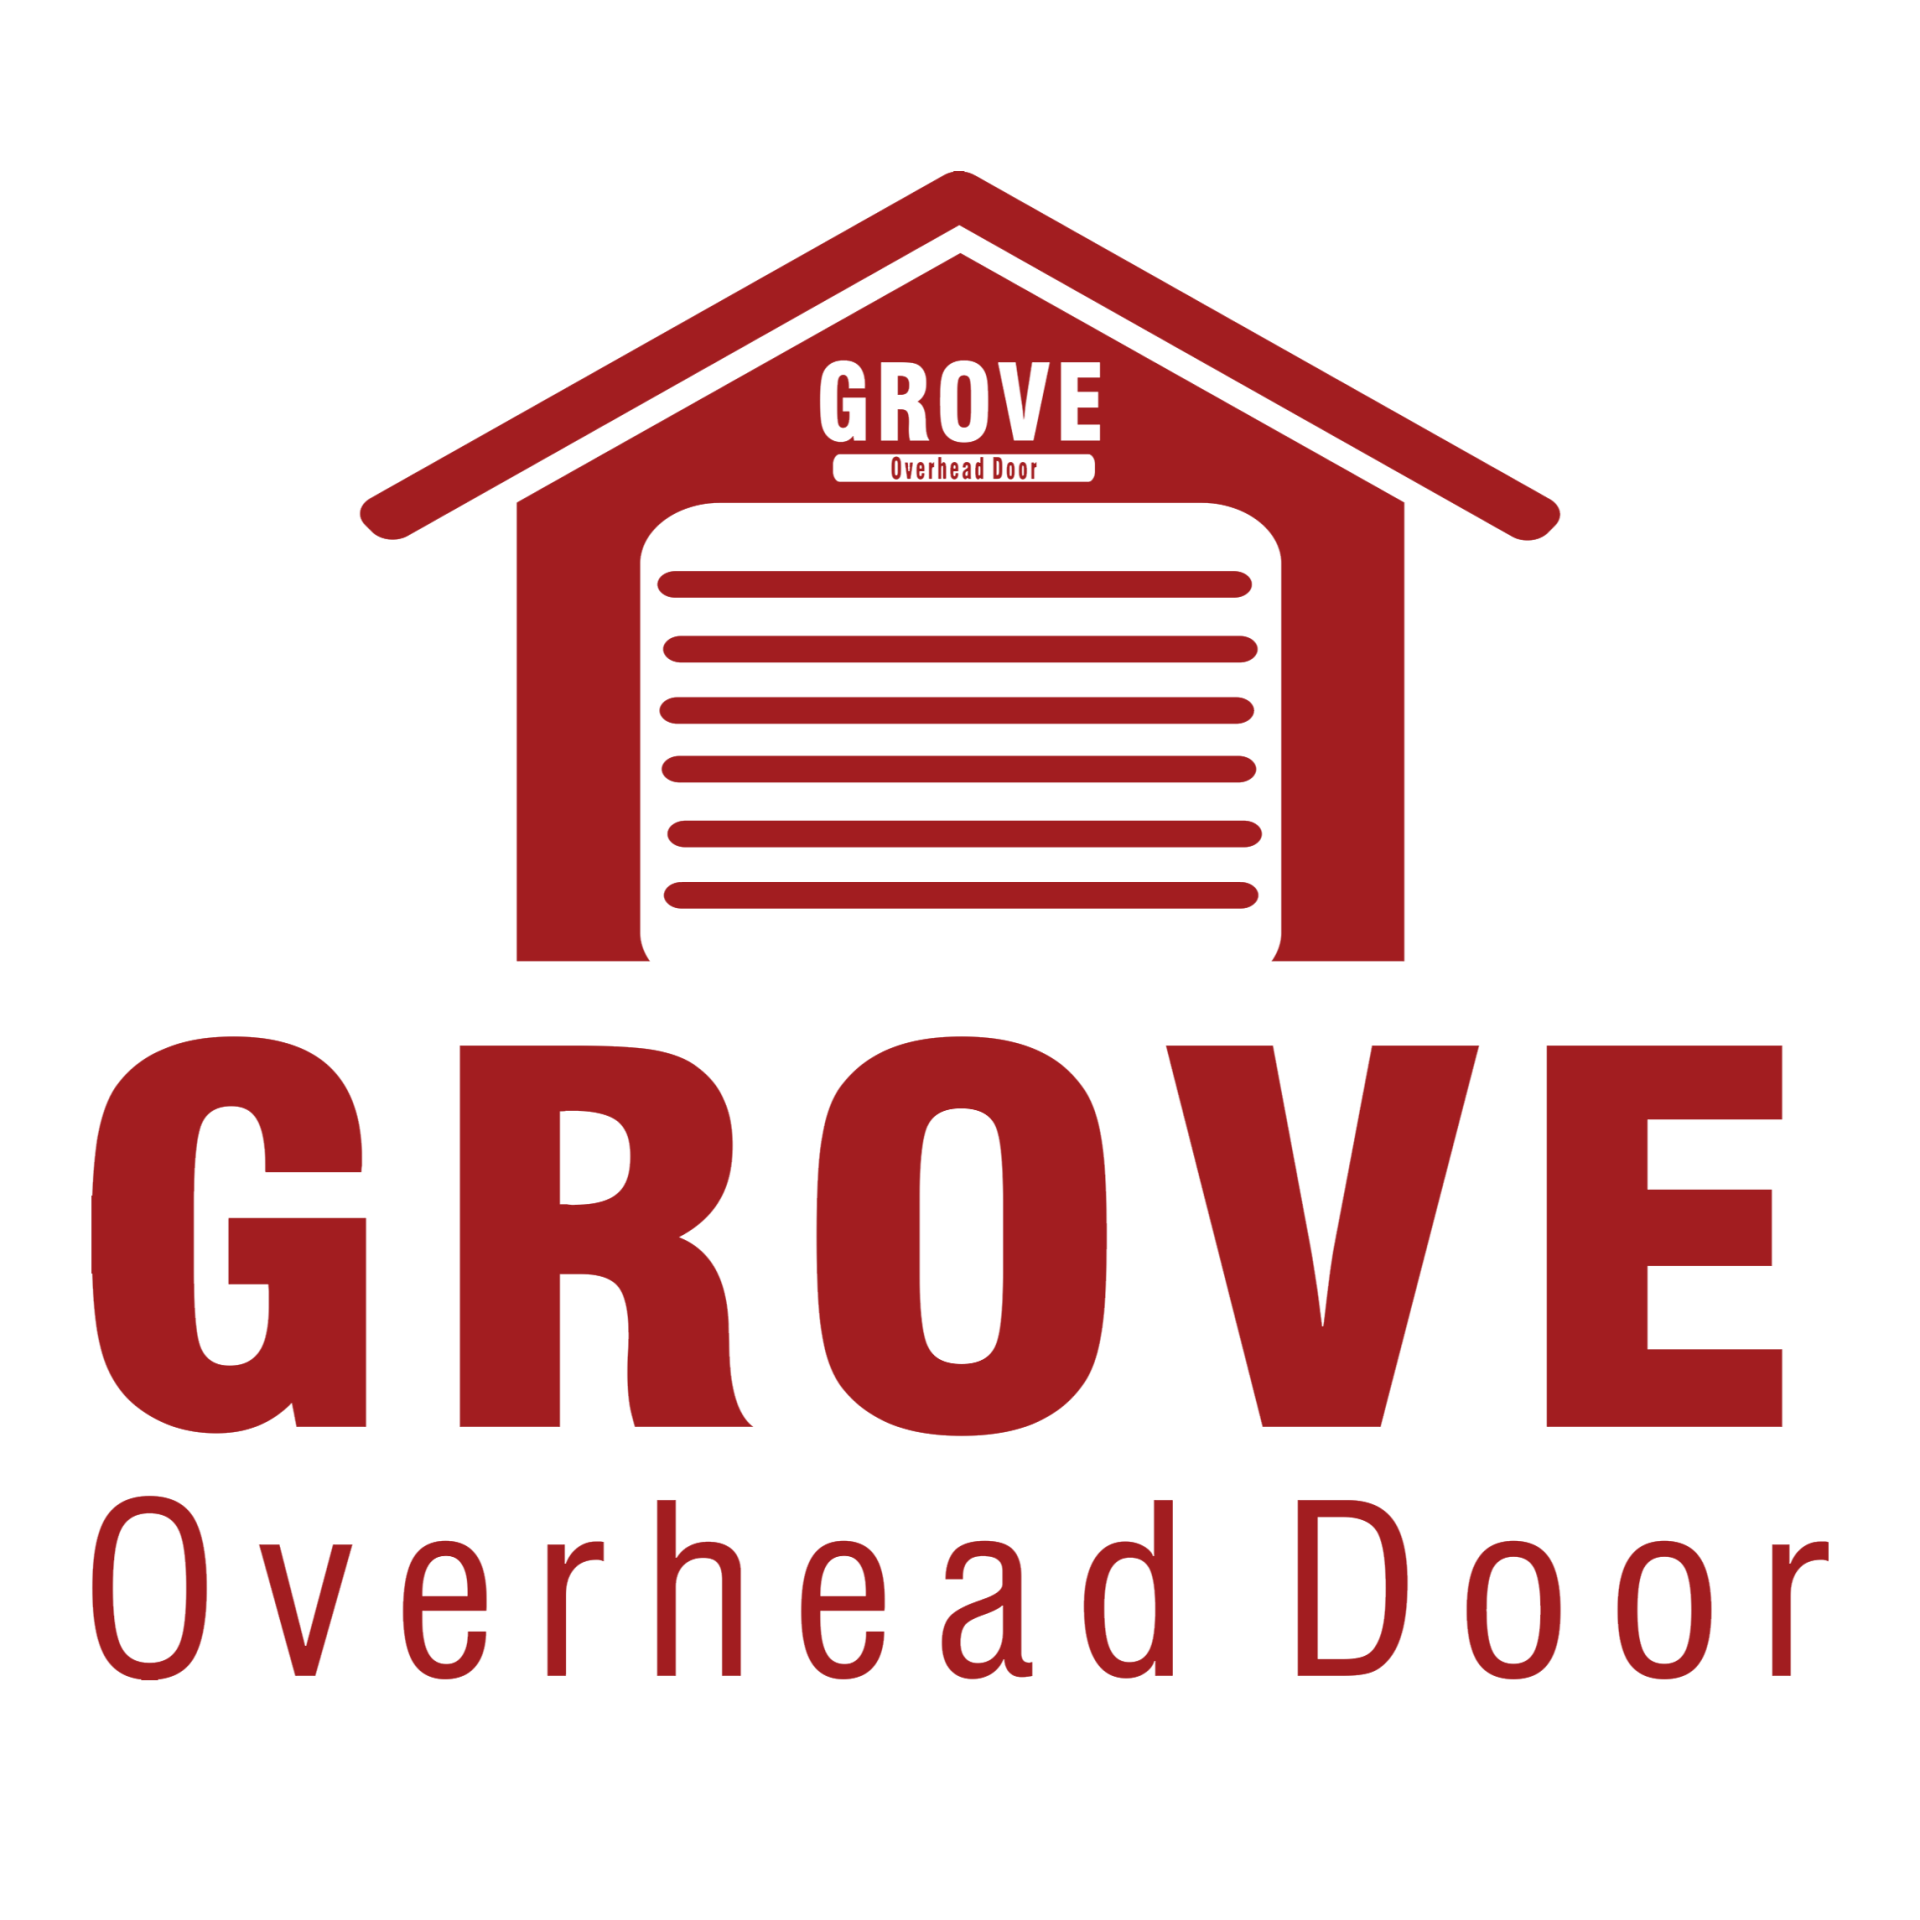 Grove Overhead Door